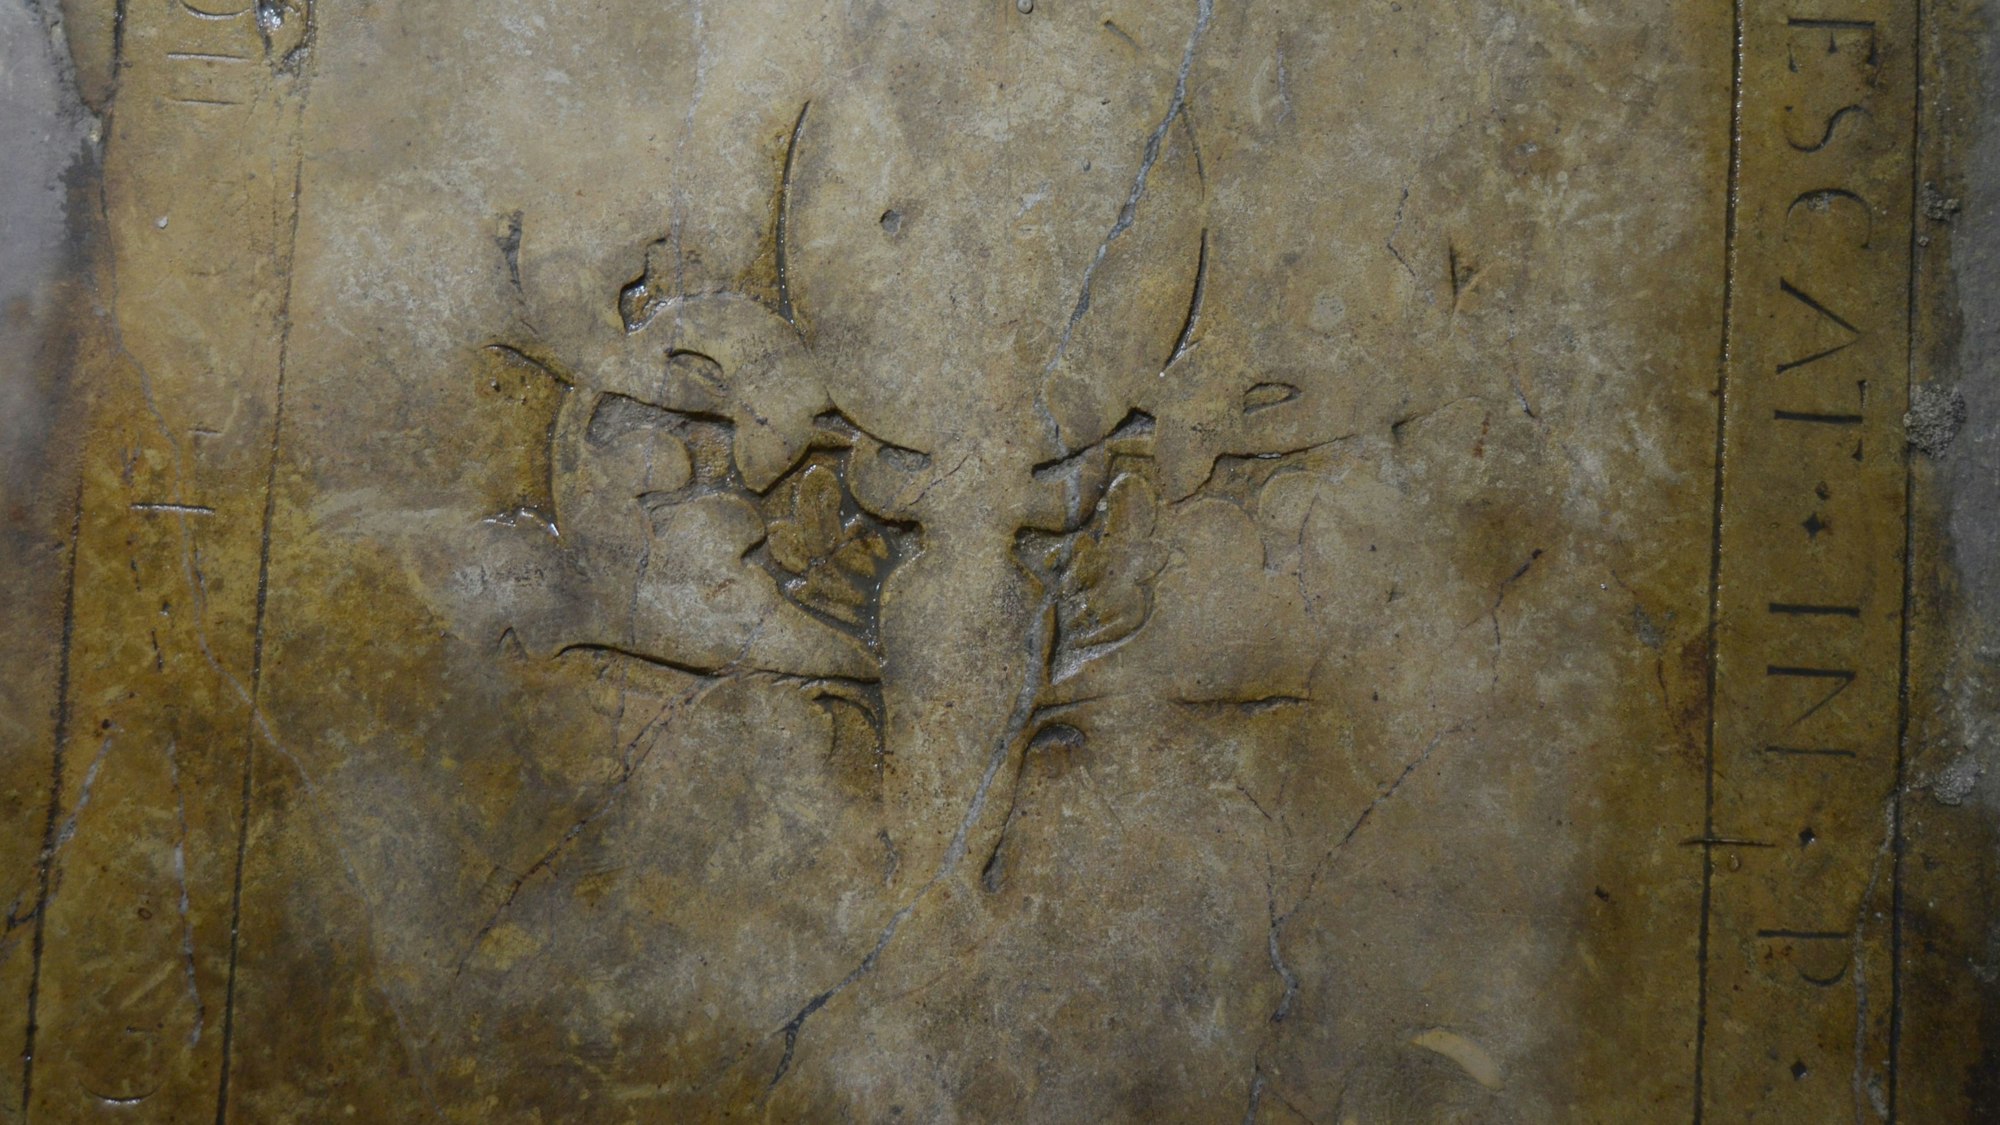 Ein Blick auf die Grabplatte: am rechten Rand erkennt man die lateinische Formel „Requiescat in pace“, daneben Reste der zentralen Verzierung.